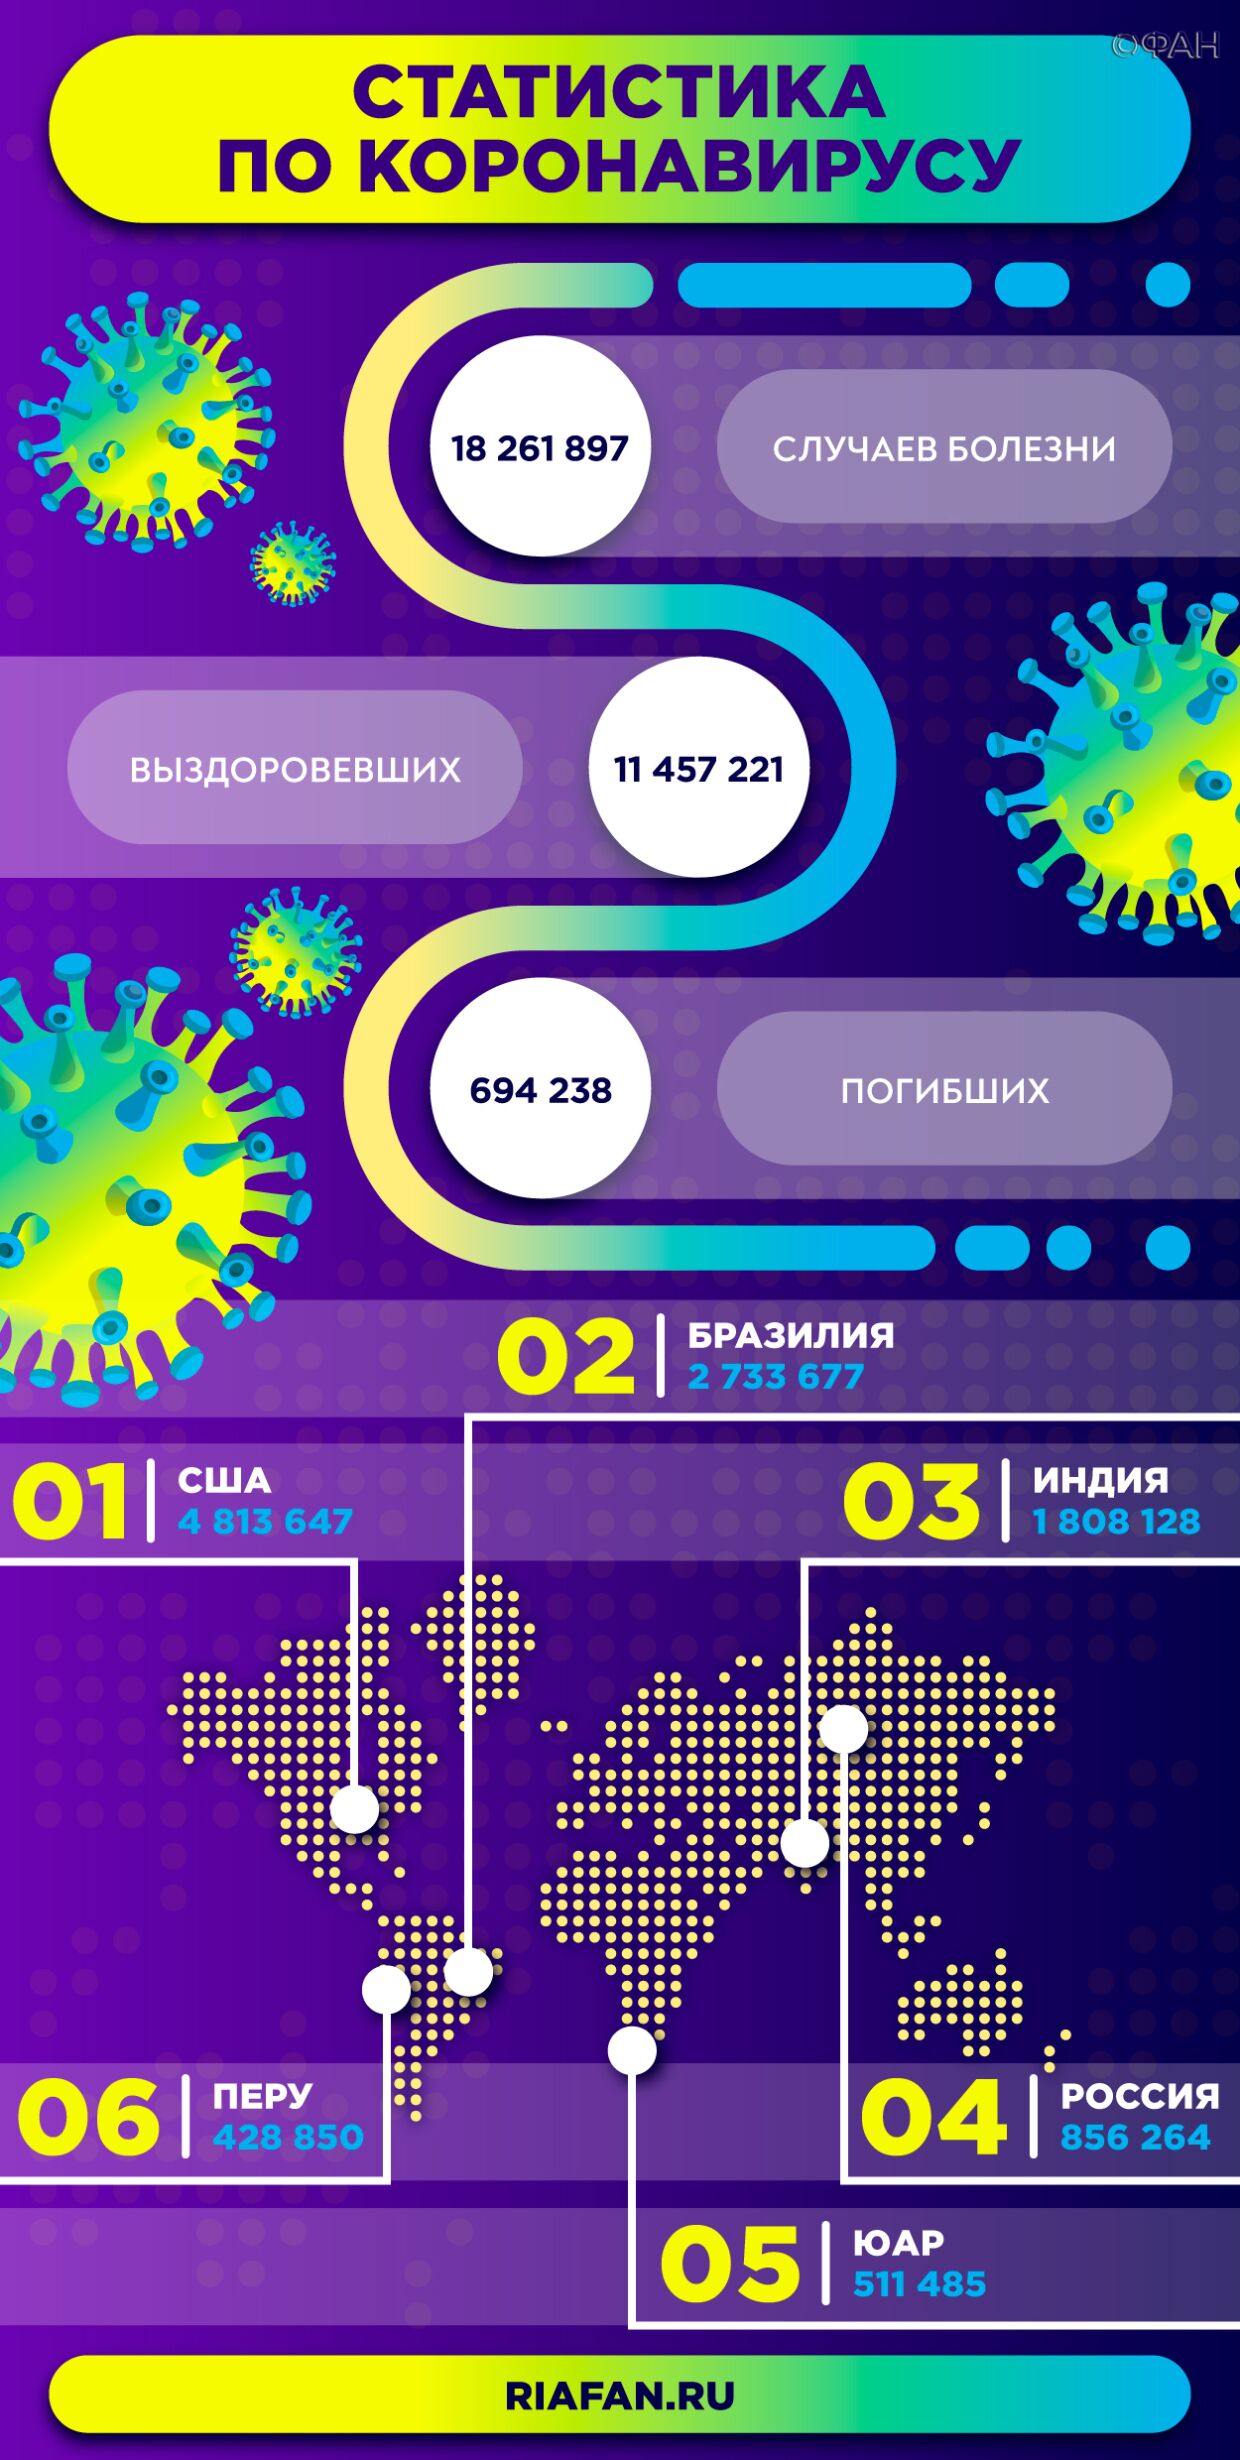 Оперштаб Москвы сообщил о смерти 12 пациентов с коронавирусом